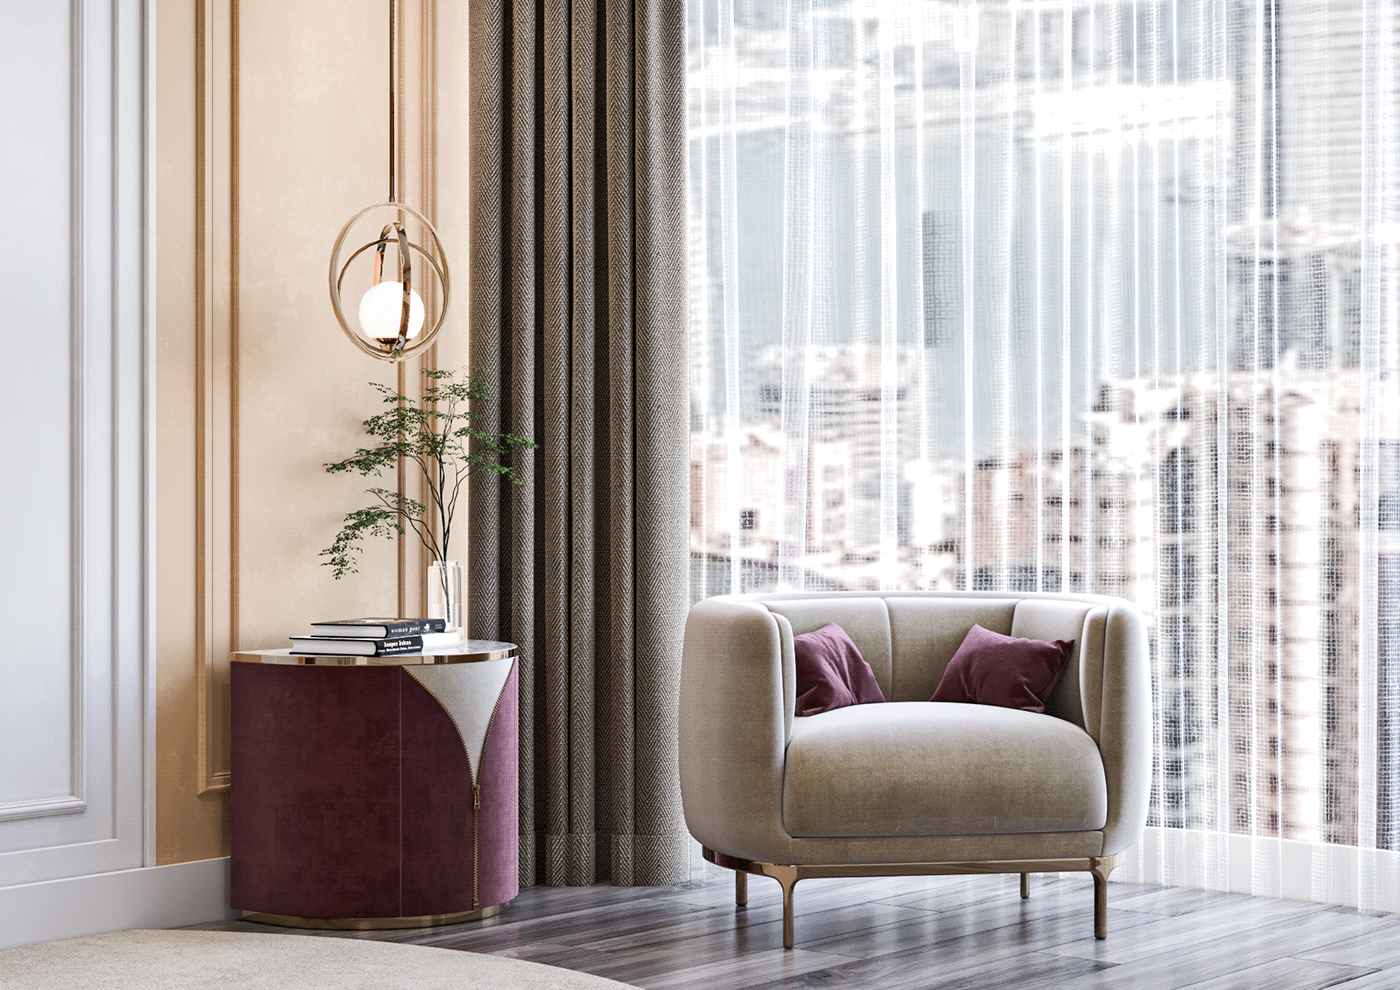 3ds max architecture corona interior design  luxury Luxury Design modern moderninteriordesign Render visualization